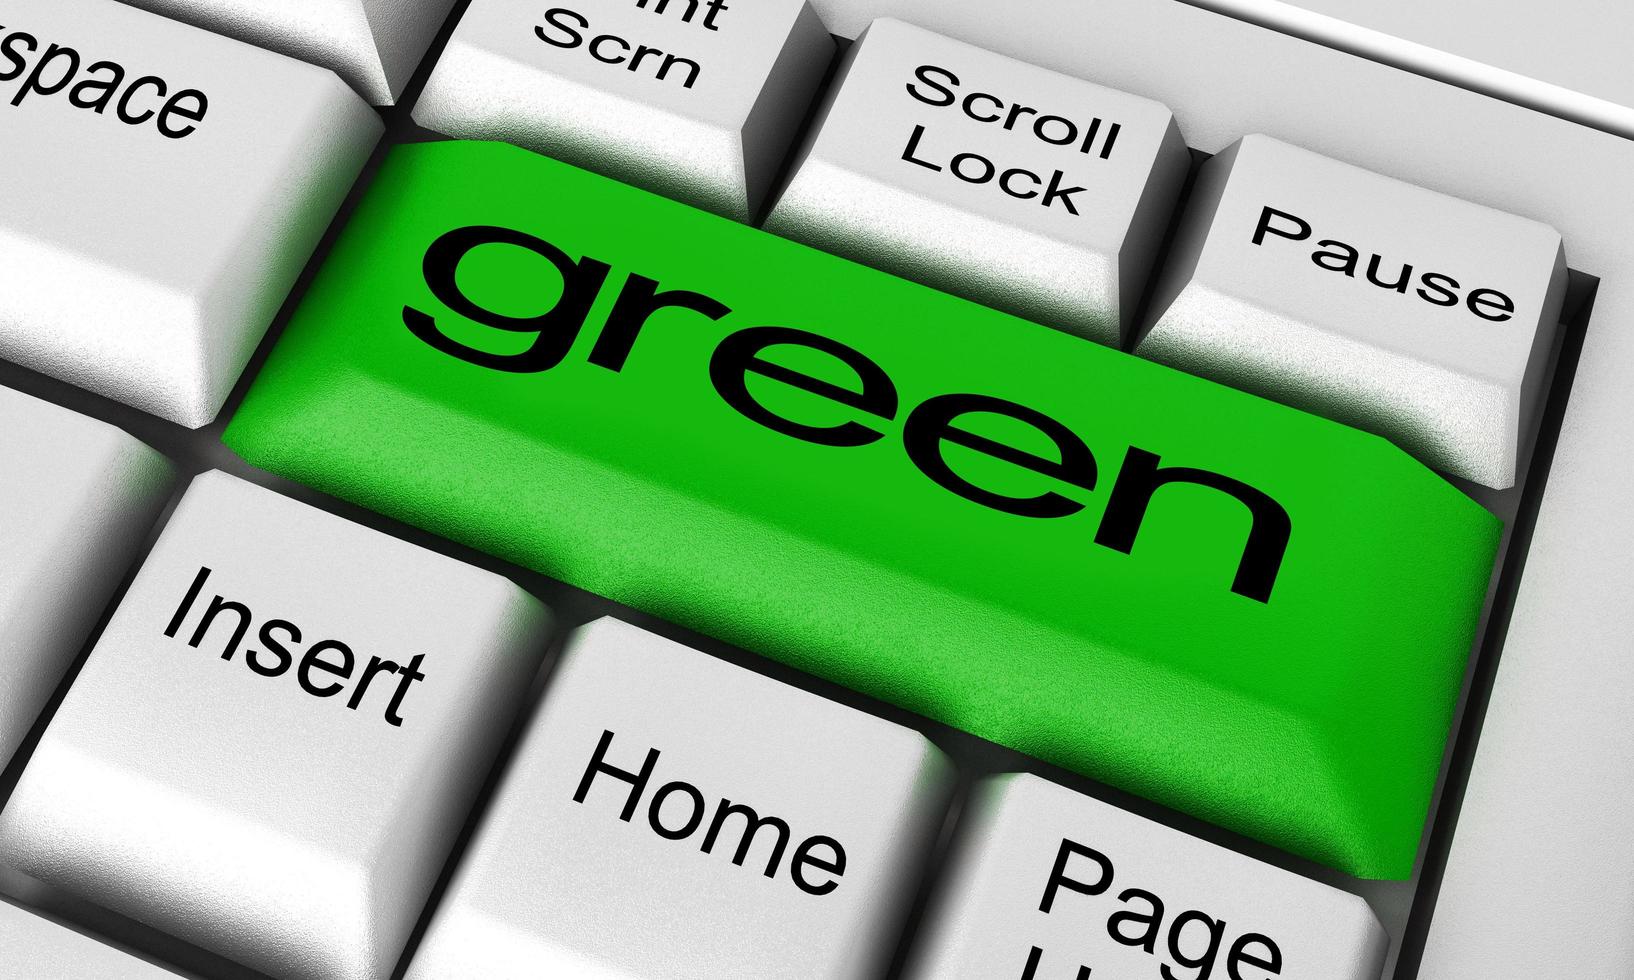 palabra verde en el botón del teclado foto